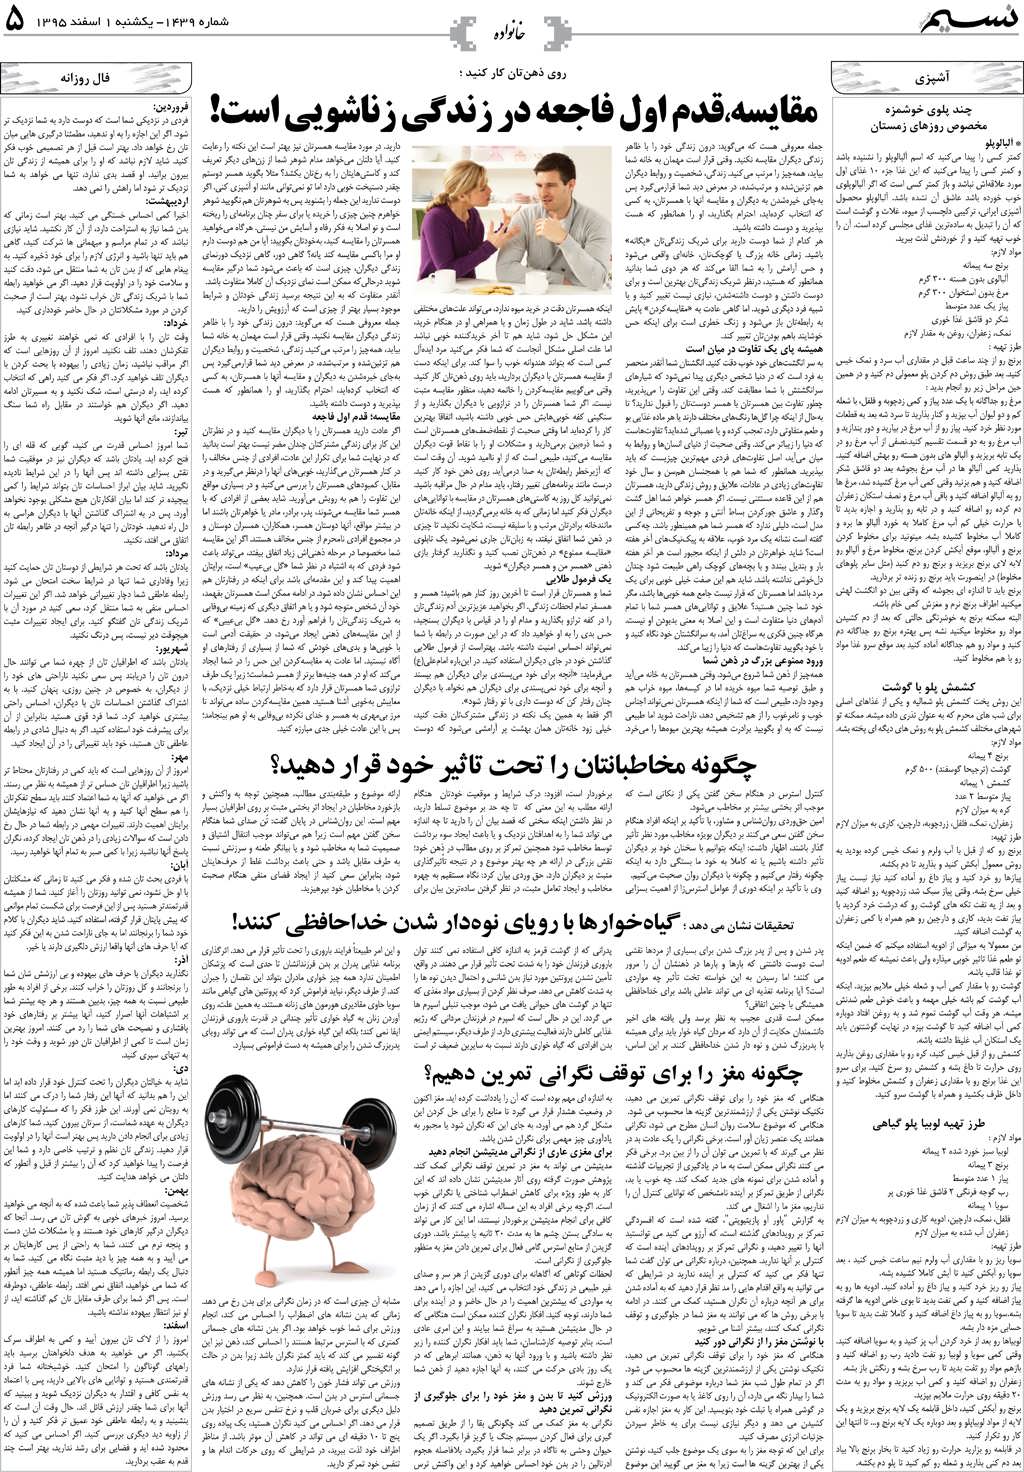 صفحه خانواده روزنامه نسیم شماره 1439